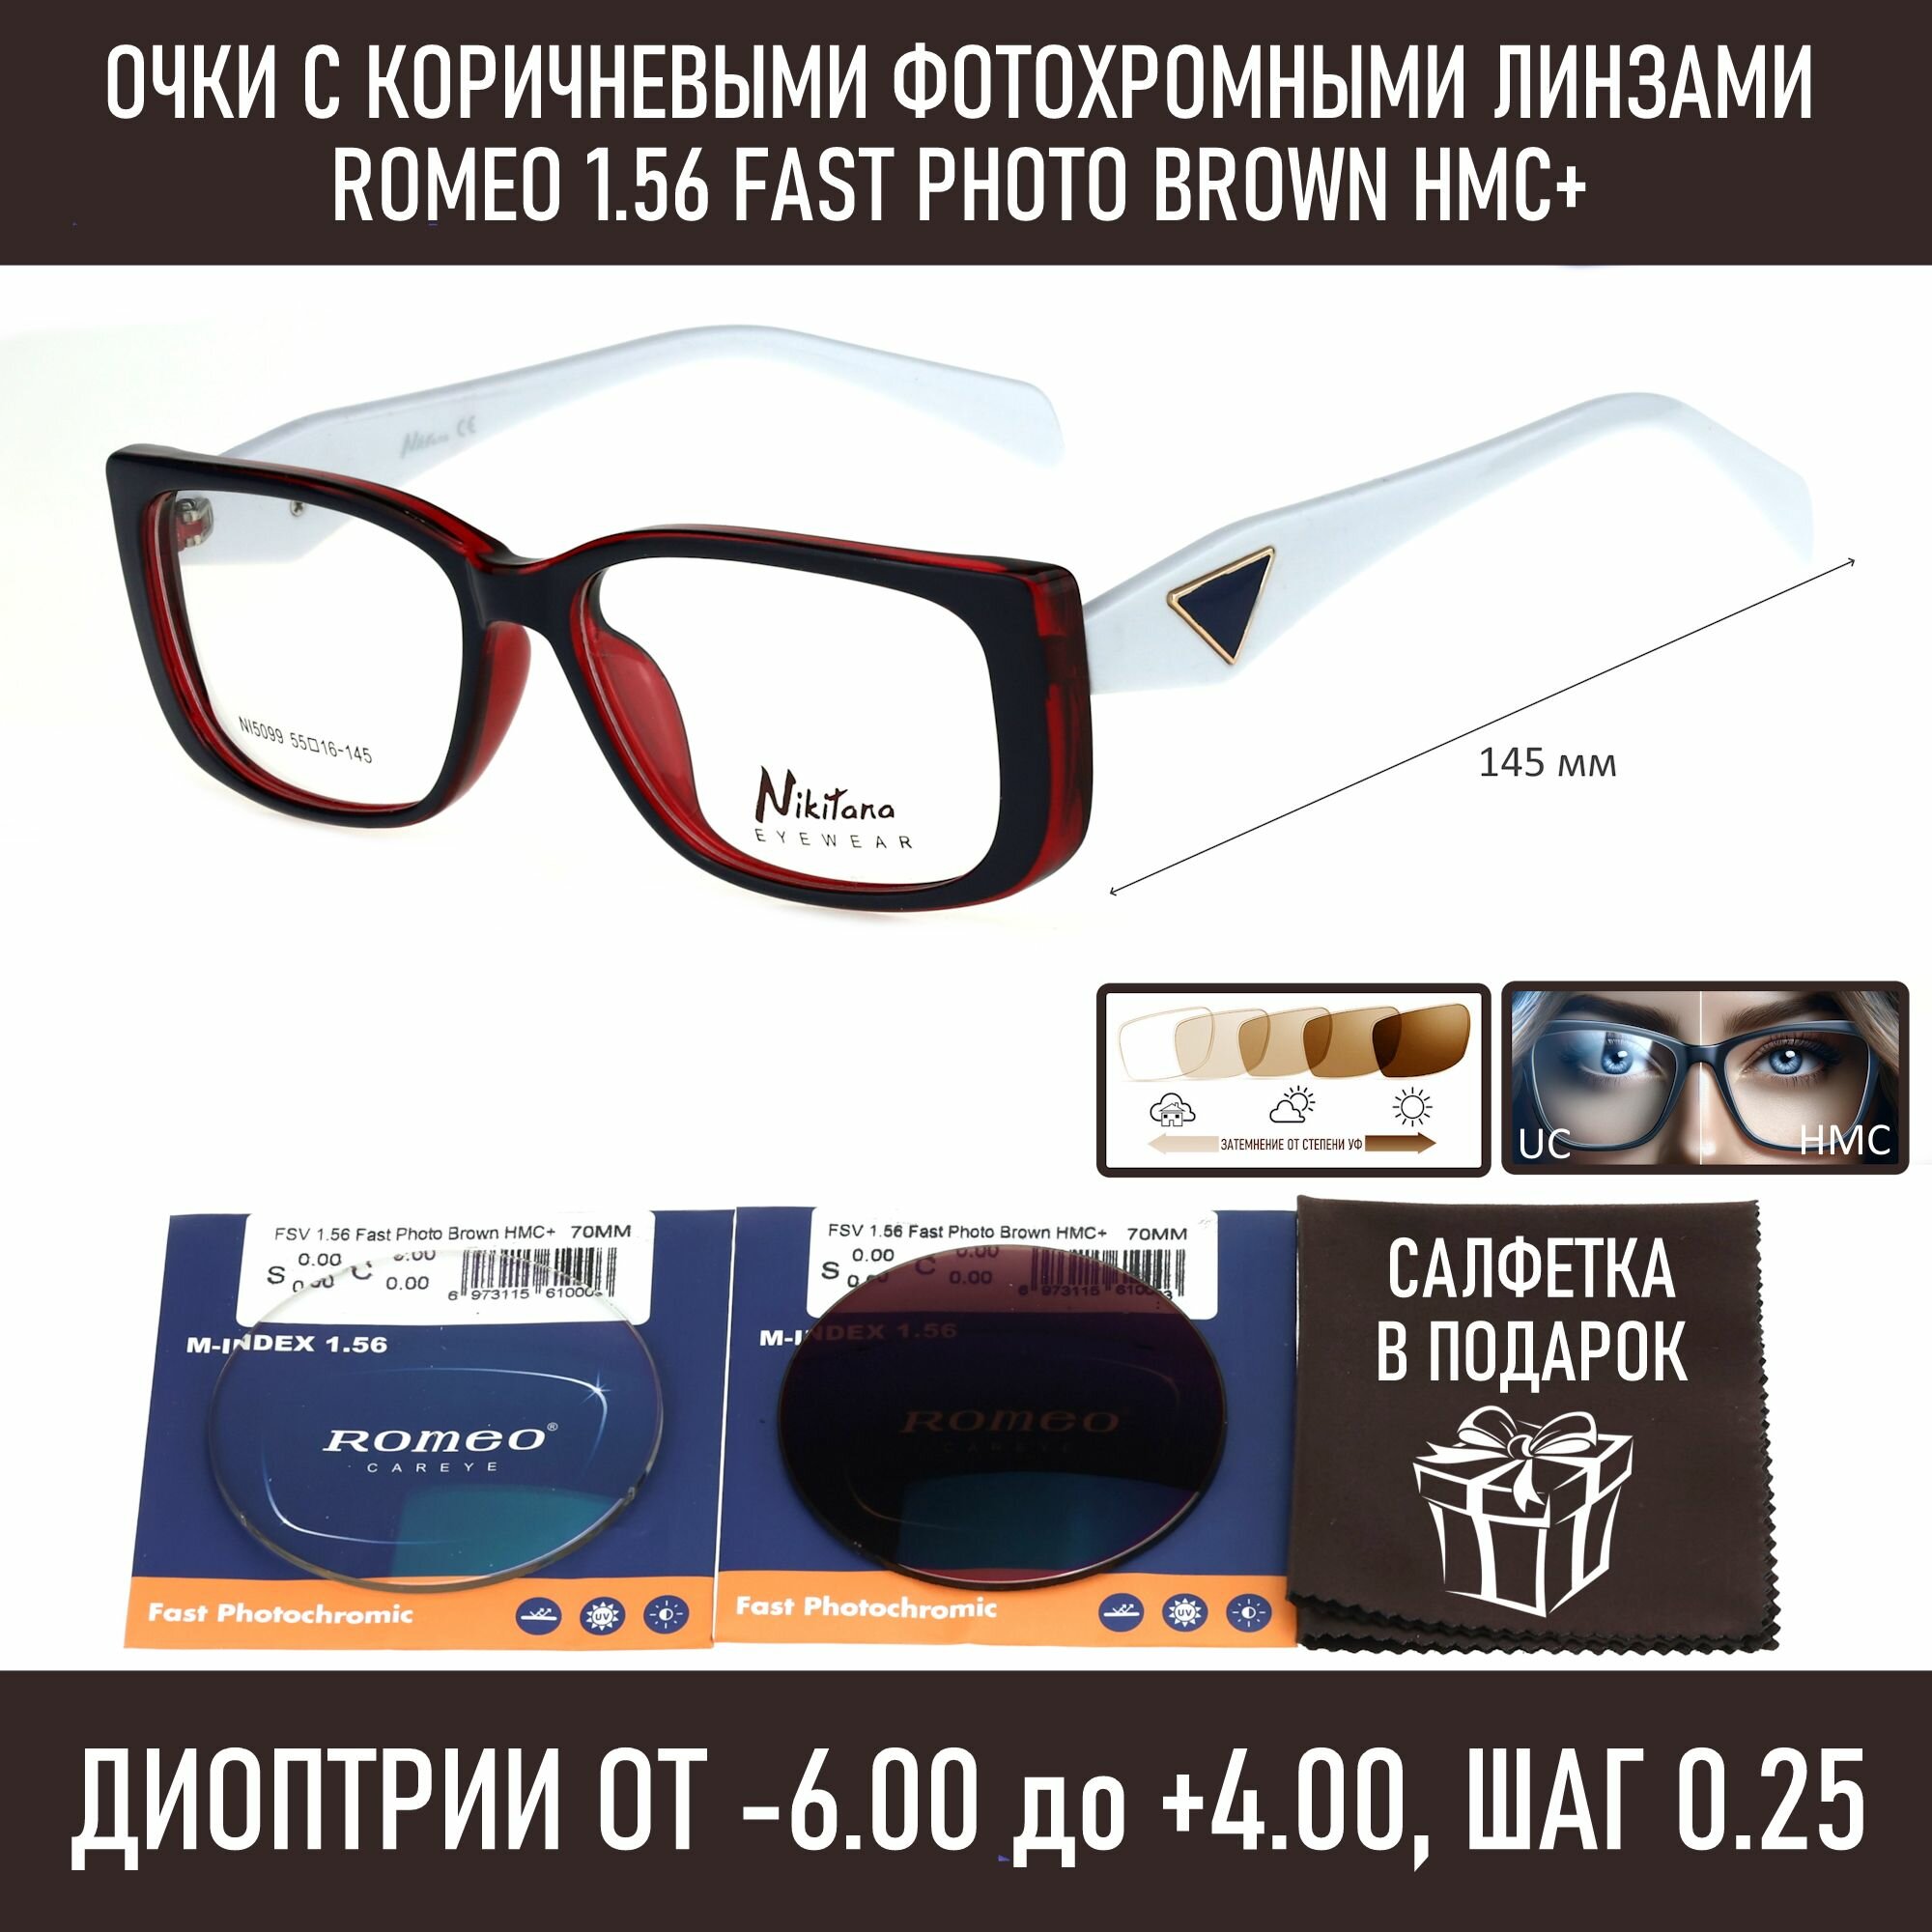 Фотохромные очки для зрения NIKITANA мод. 5099 Цвет 2 с линзами ROMEO 1.56 FAST Photocolor BROWN, HMC+ -3.25 РЦ 64-66